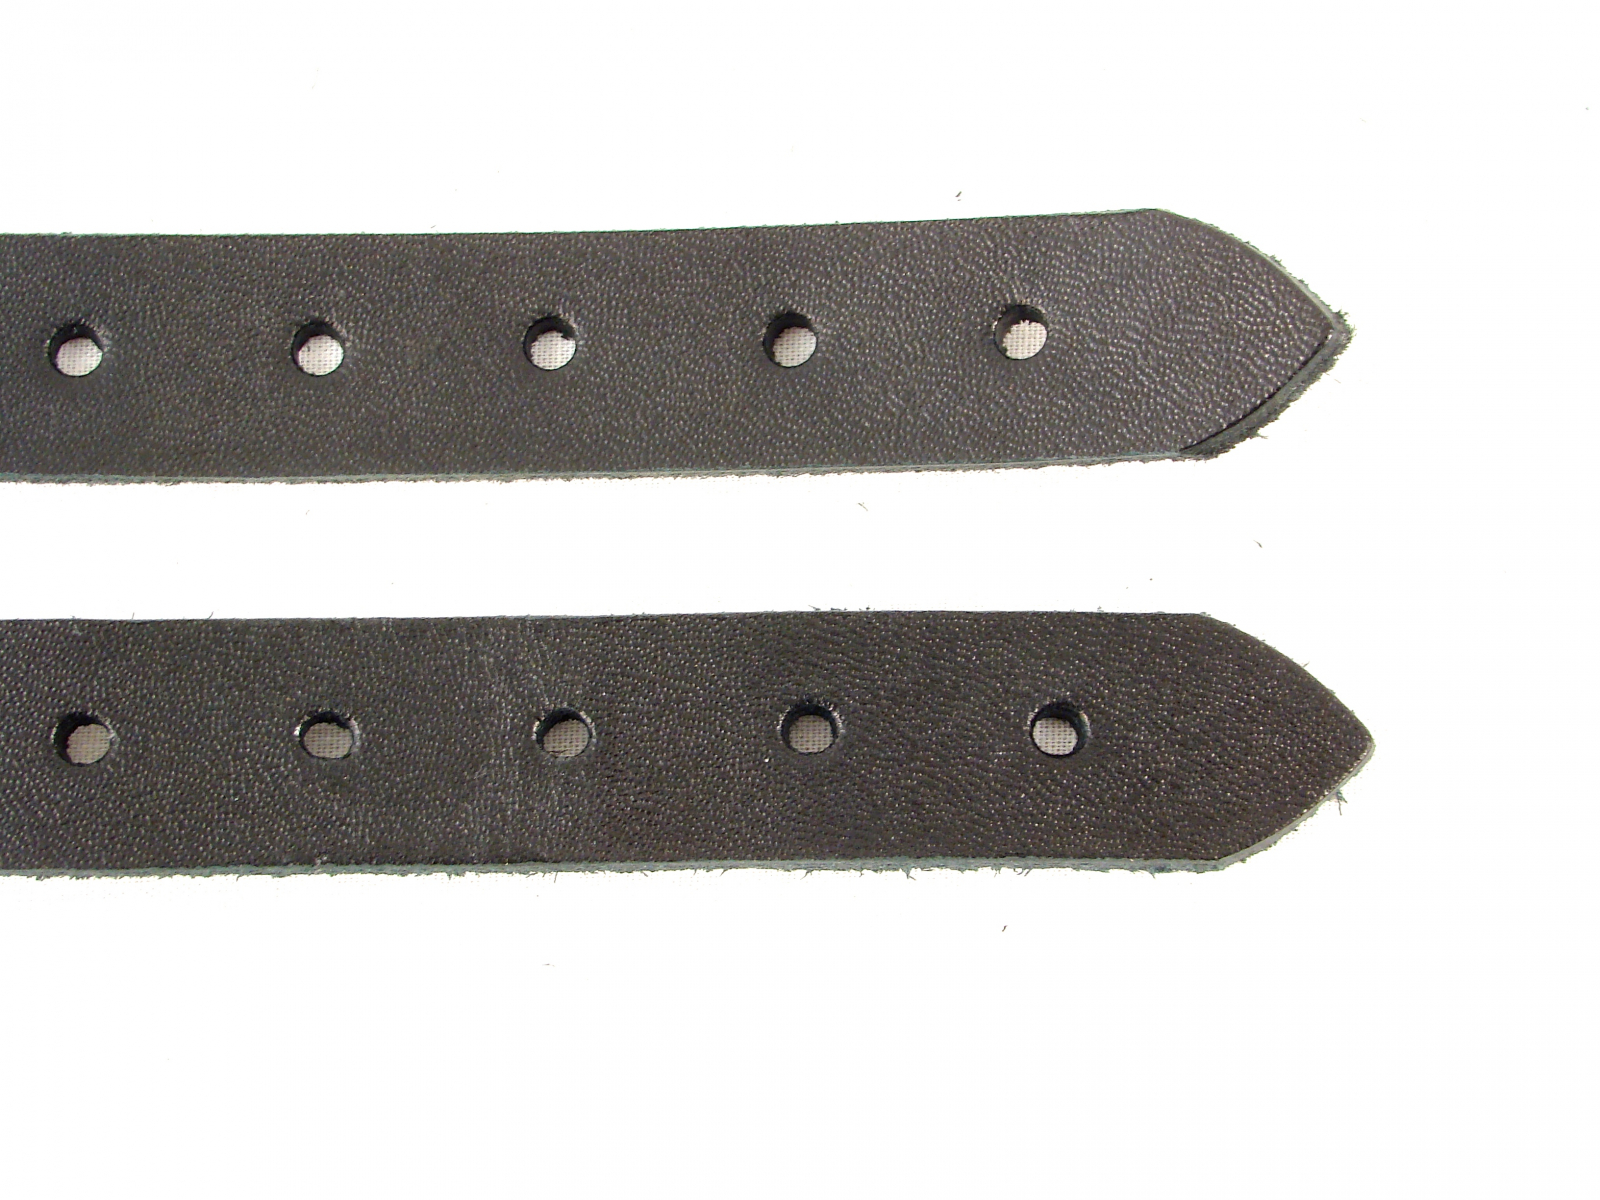 Kilt Extender Straps 5/8 inch width, Kilt Buckle Straps for Tight